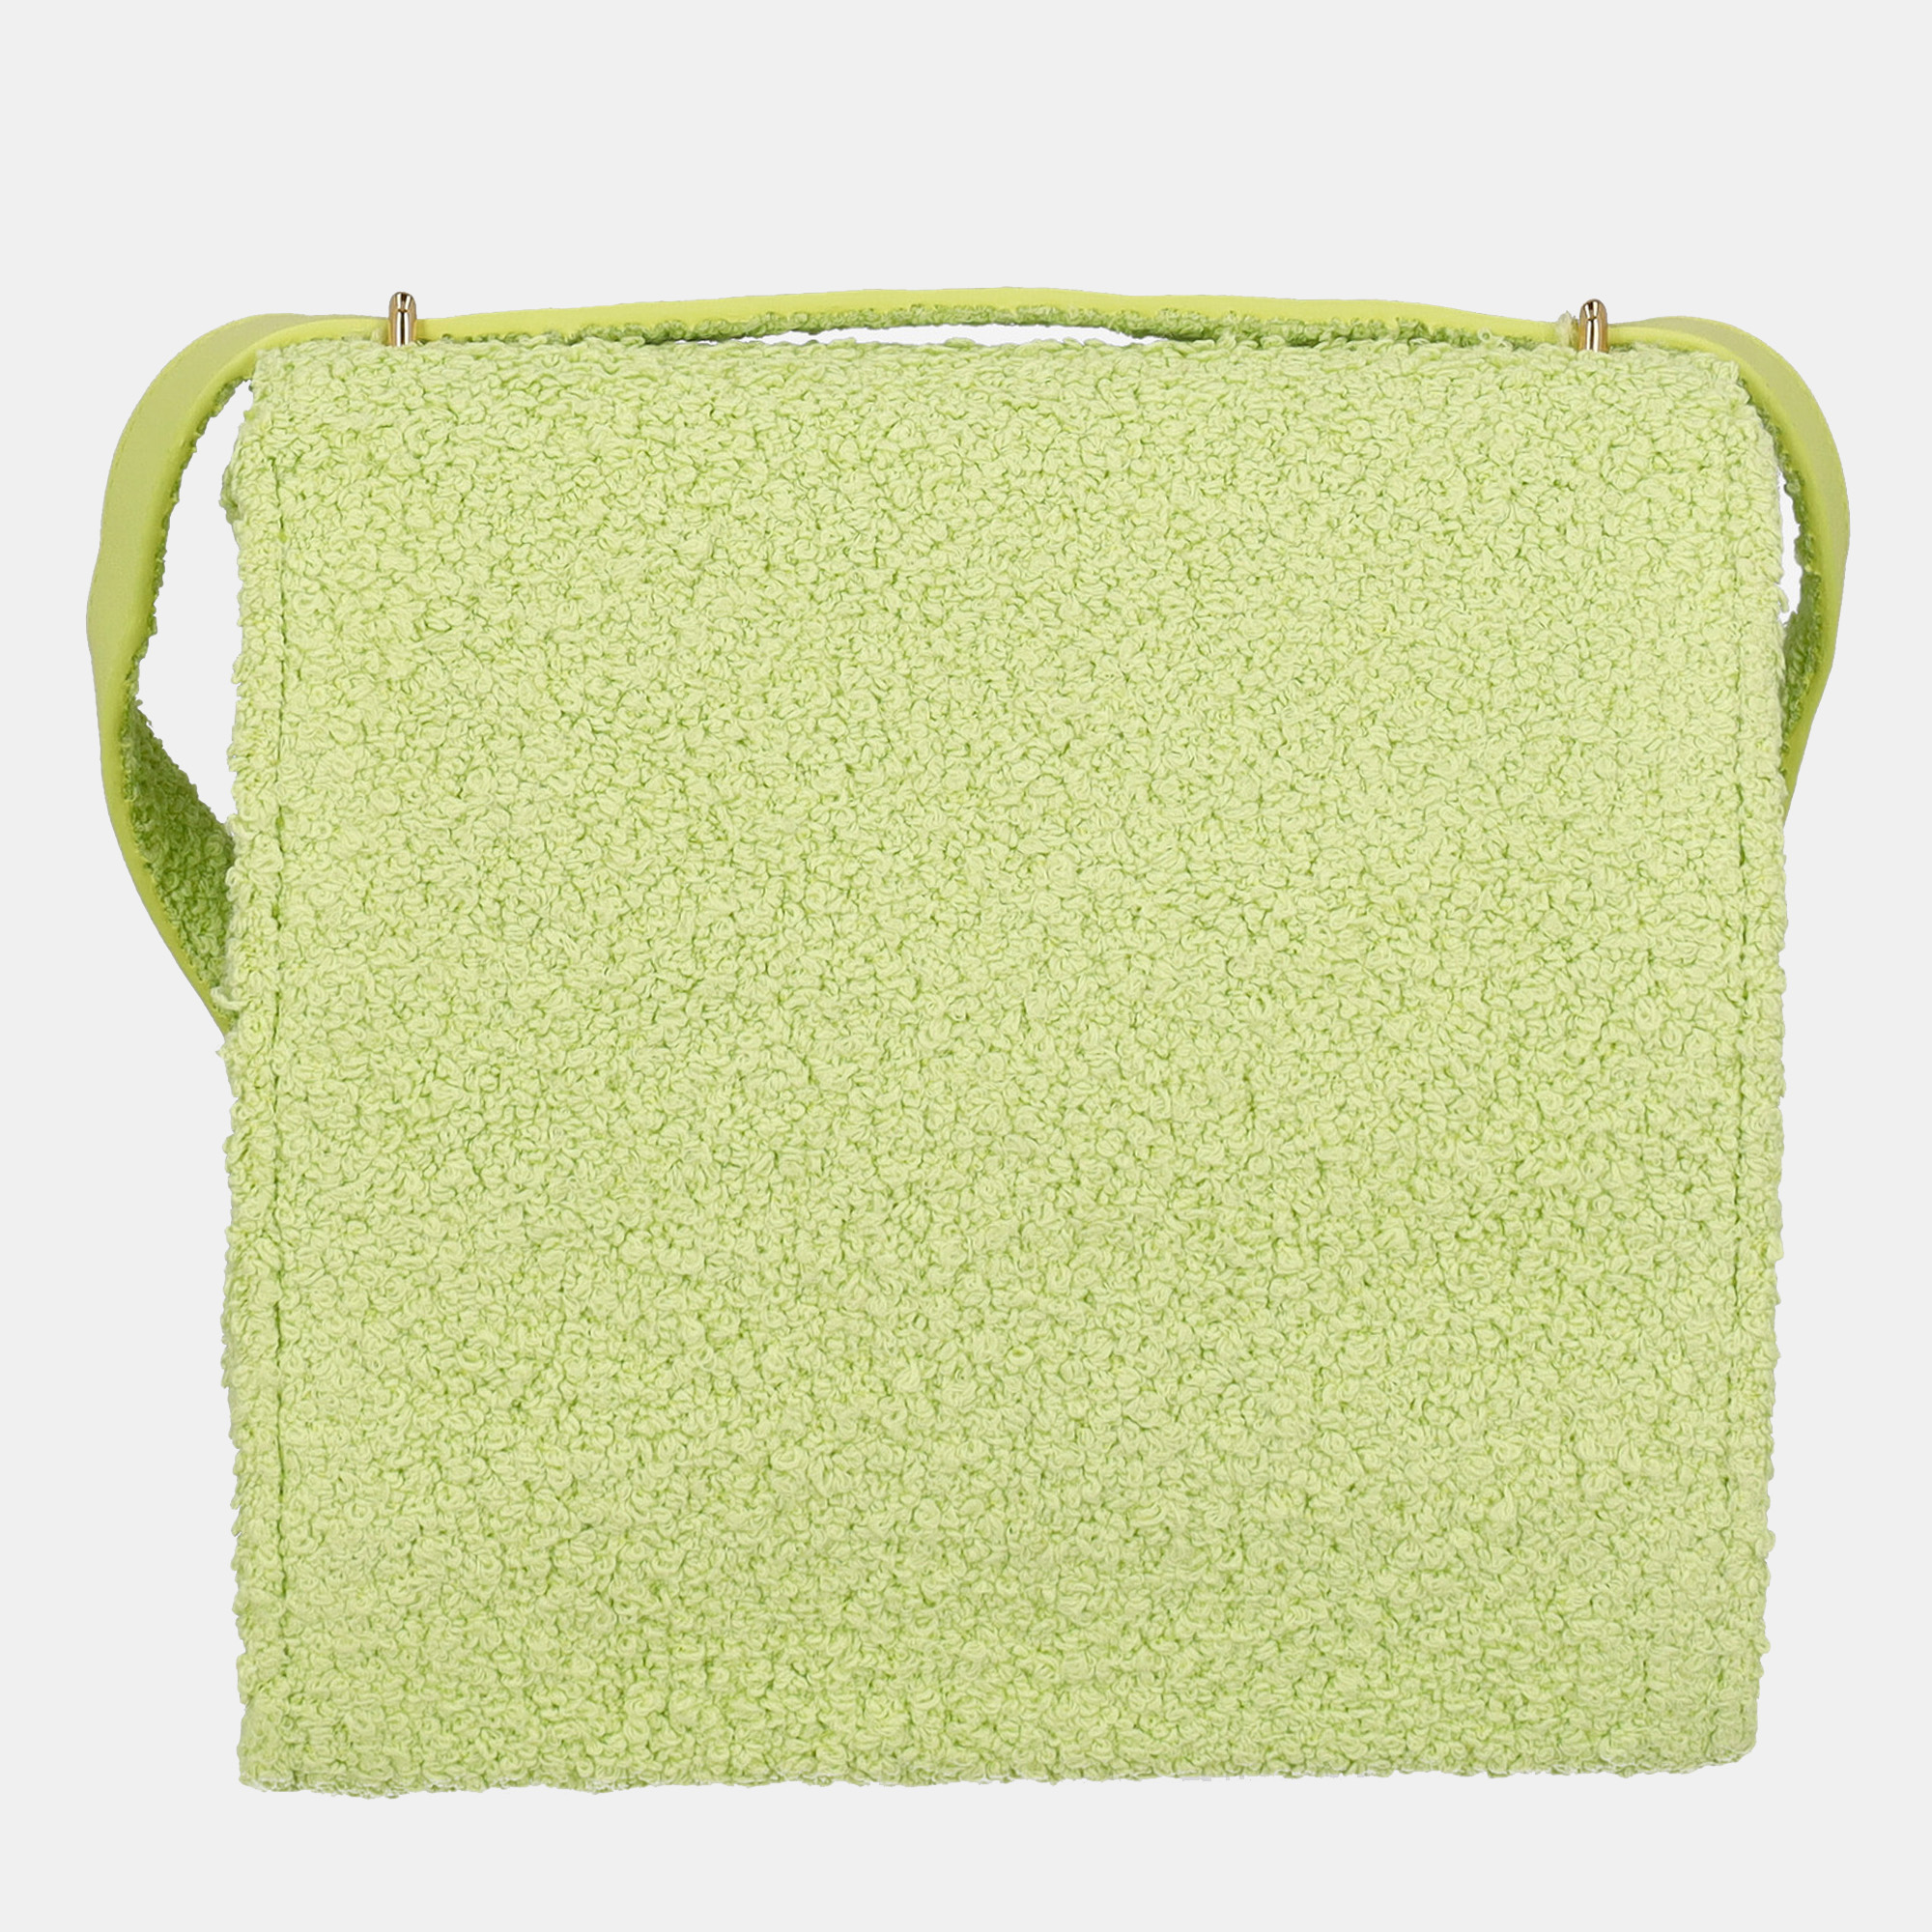 Bottega Veneta Women's Fabric Bag - Green - One Size